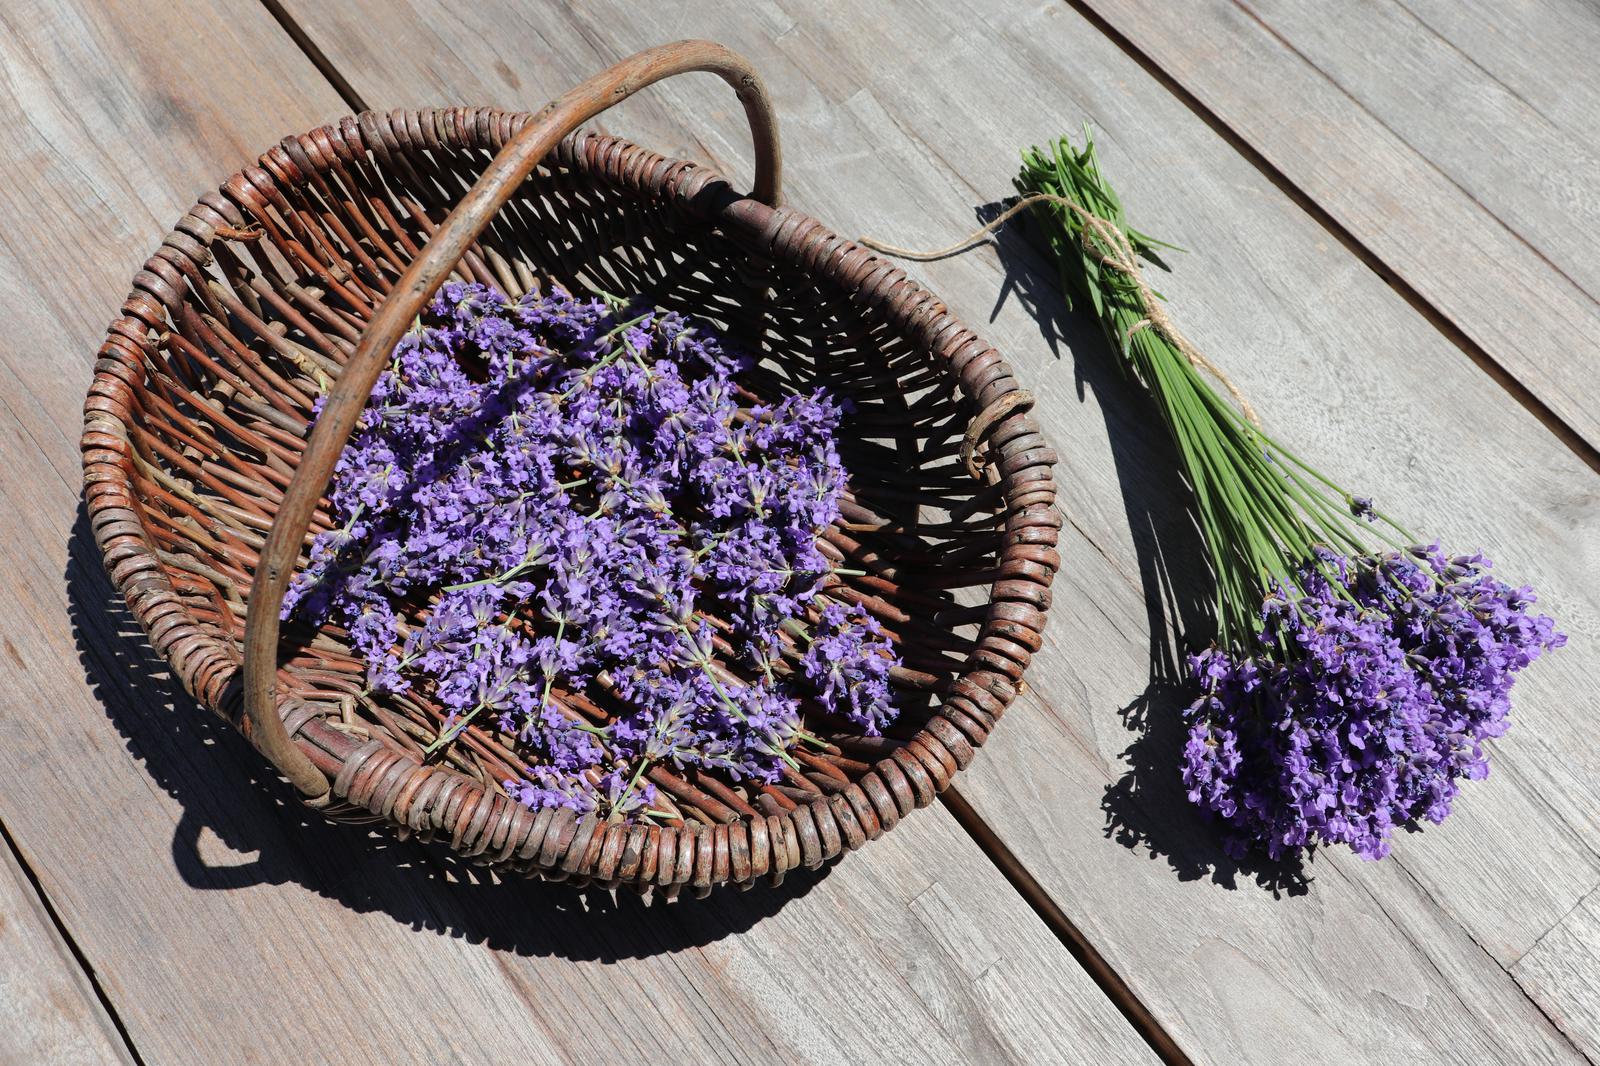 Lavendelöl|Lavendel-Salzpeeling| Lavendel-Saunasalz|Saunasalz|Lavendel|Lavandin|Naturkosmetik|DIY